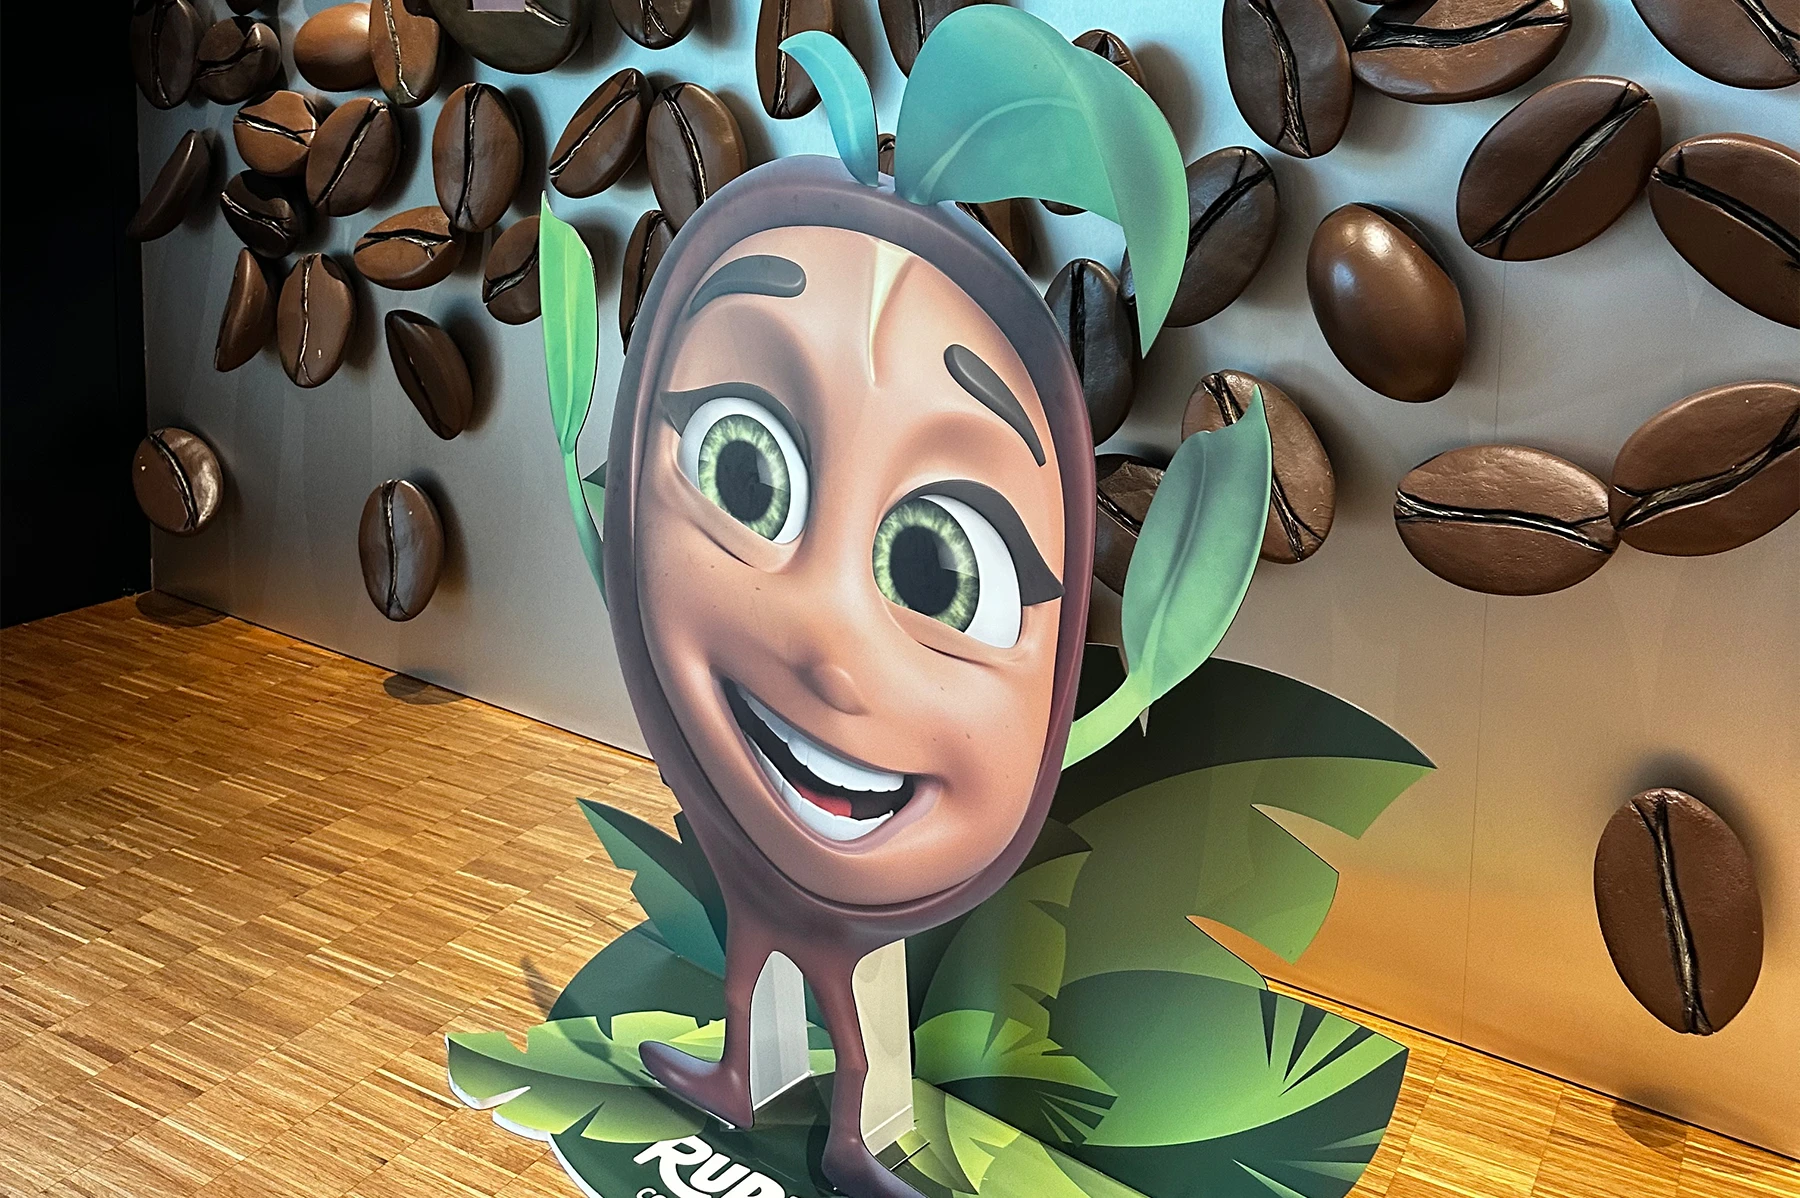 JURAworld of Coffee beinhaltet ein interaktives Erlebnis für Groß und Klein zum Thema Kaffee.